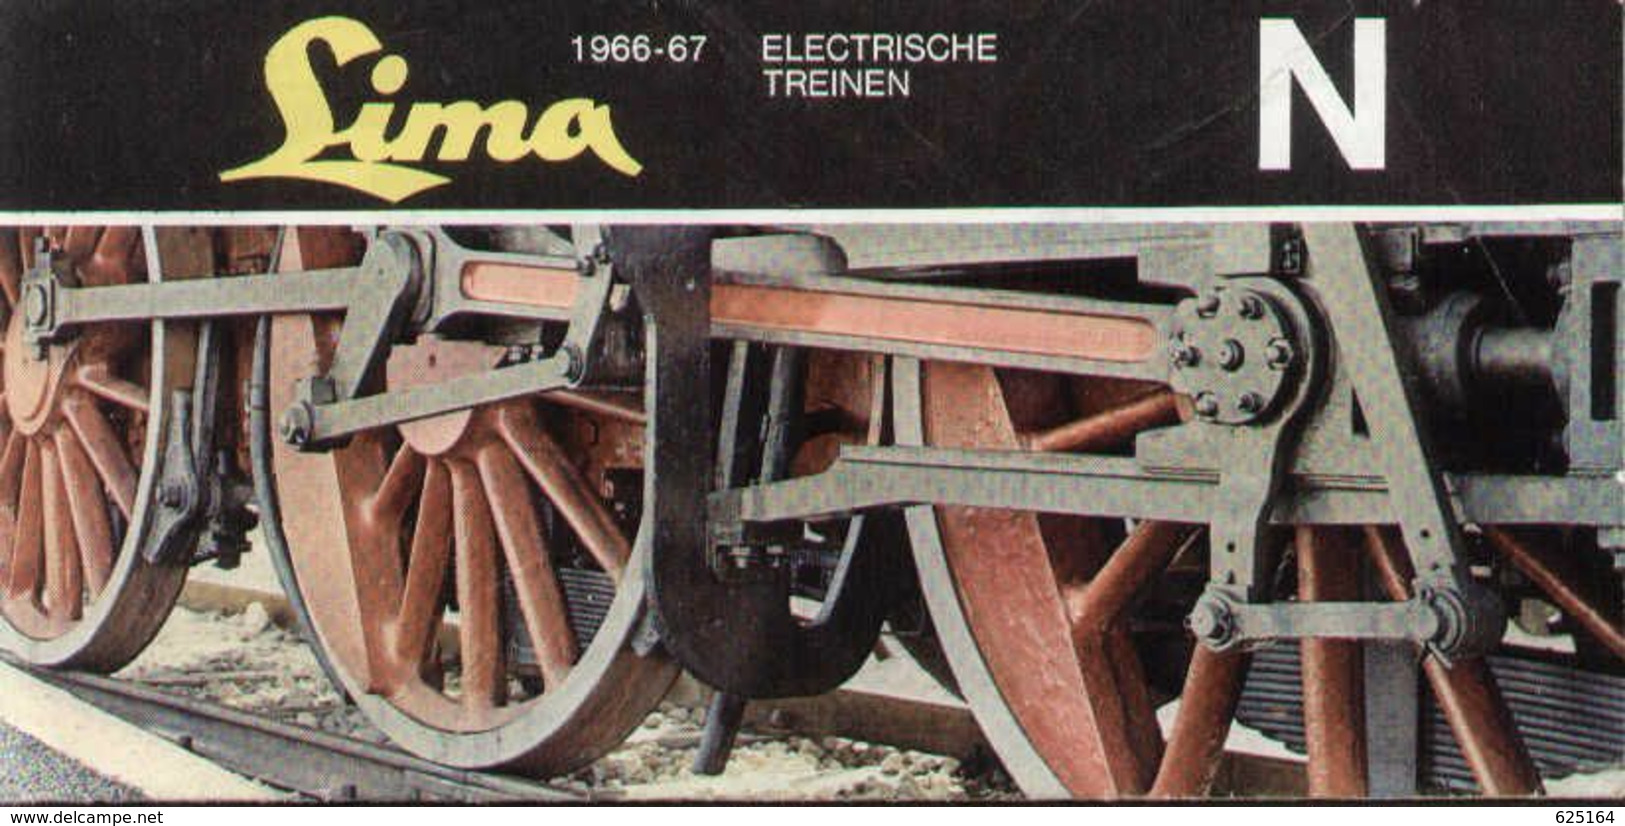 Catalogue LIMA 1966/67 Electrische Treinen N 1/160 - Dutch